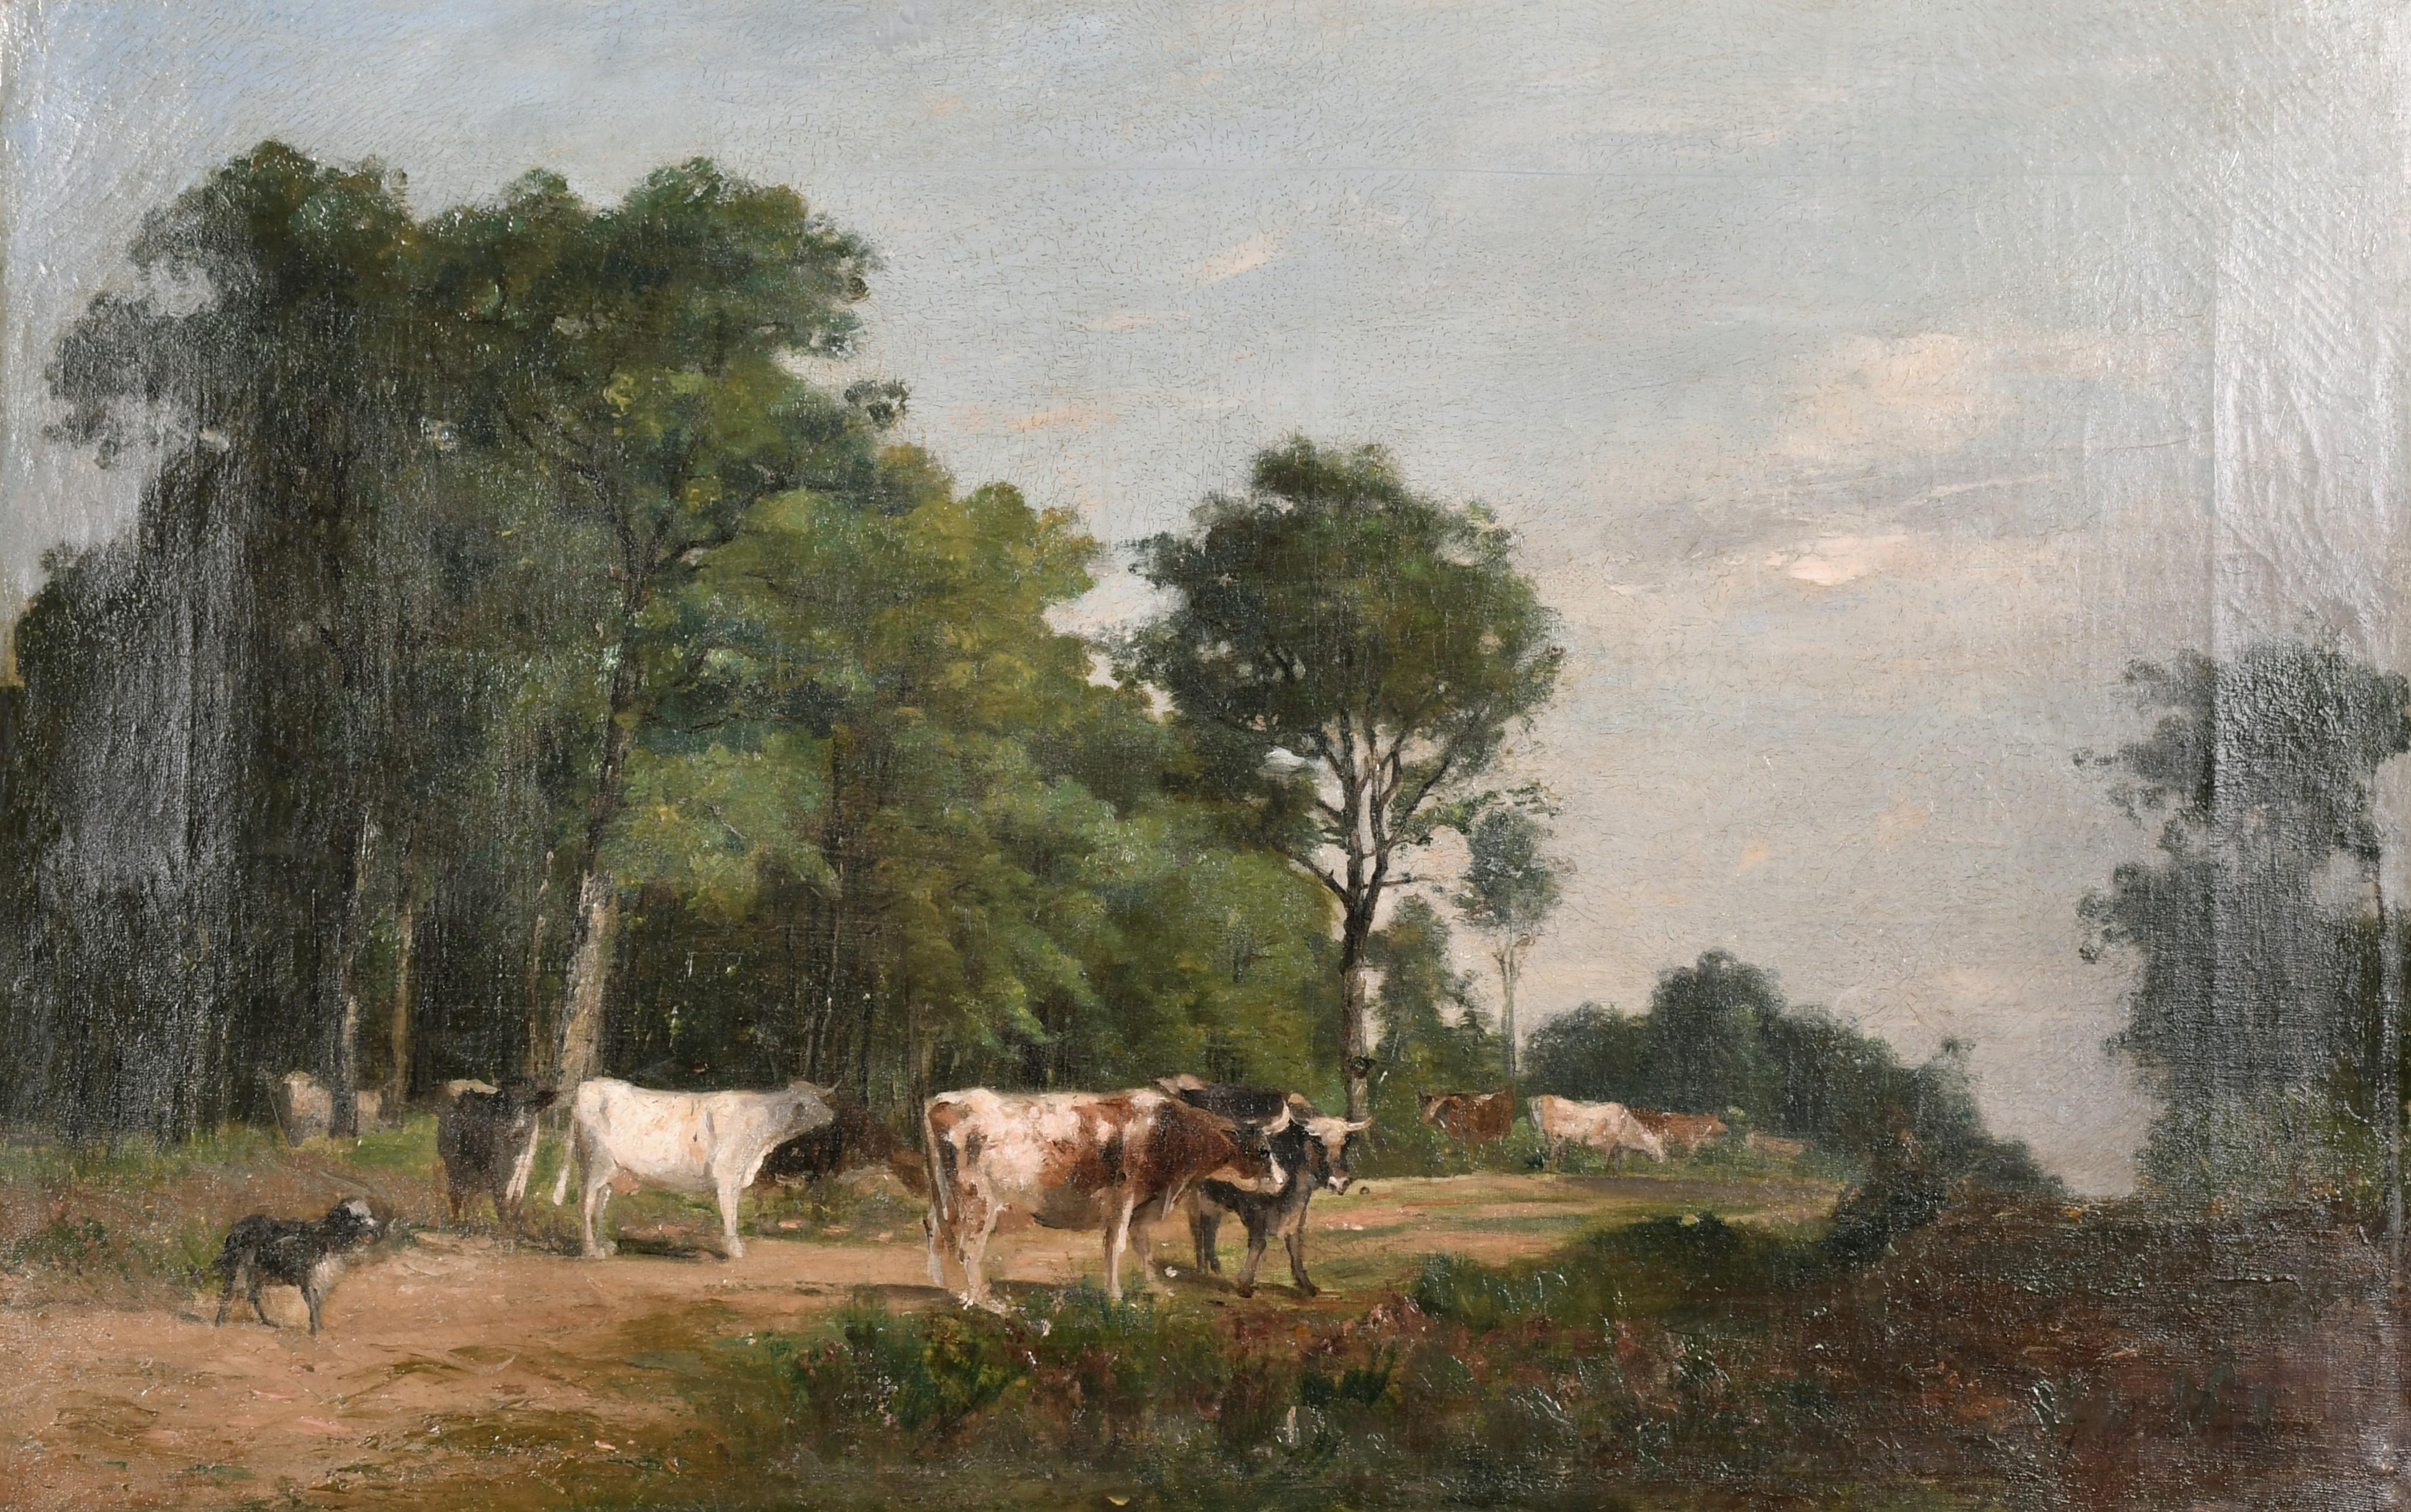 Landscape Painting Jacques Alfred Brielman (1836-1892) - Peinture à l'huile française du 19ème siècle signée de Barbizon représentant du bétail et un chien dans une colline rurale